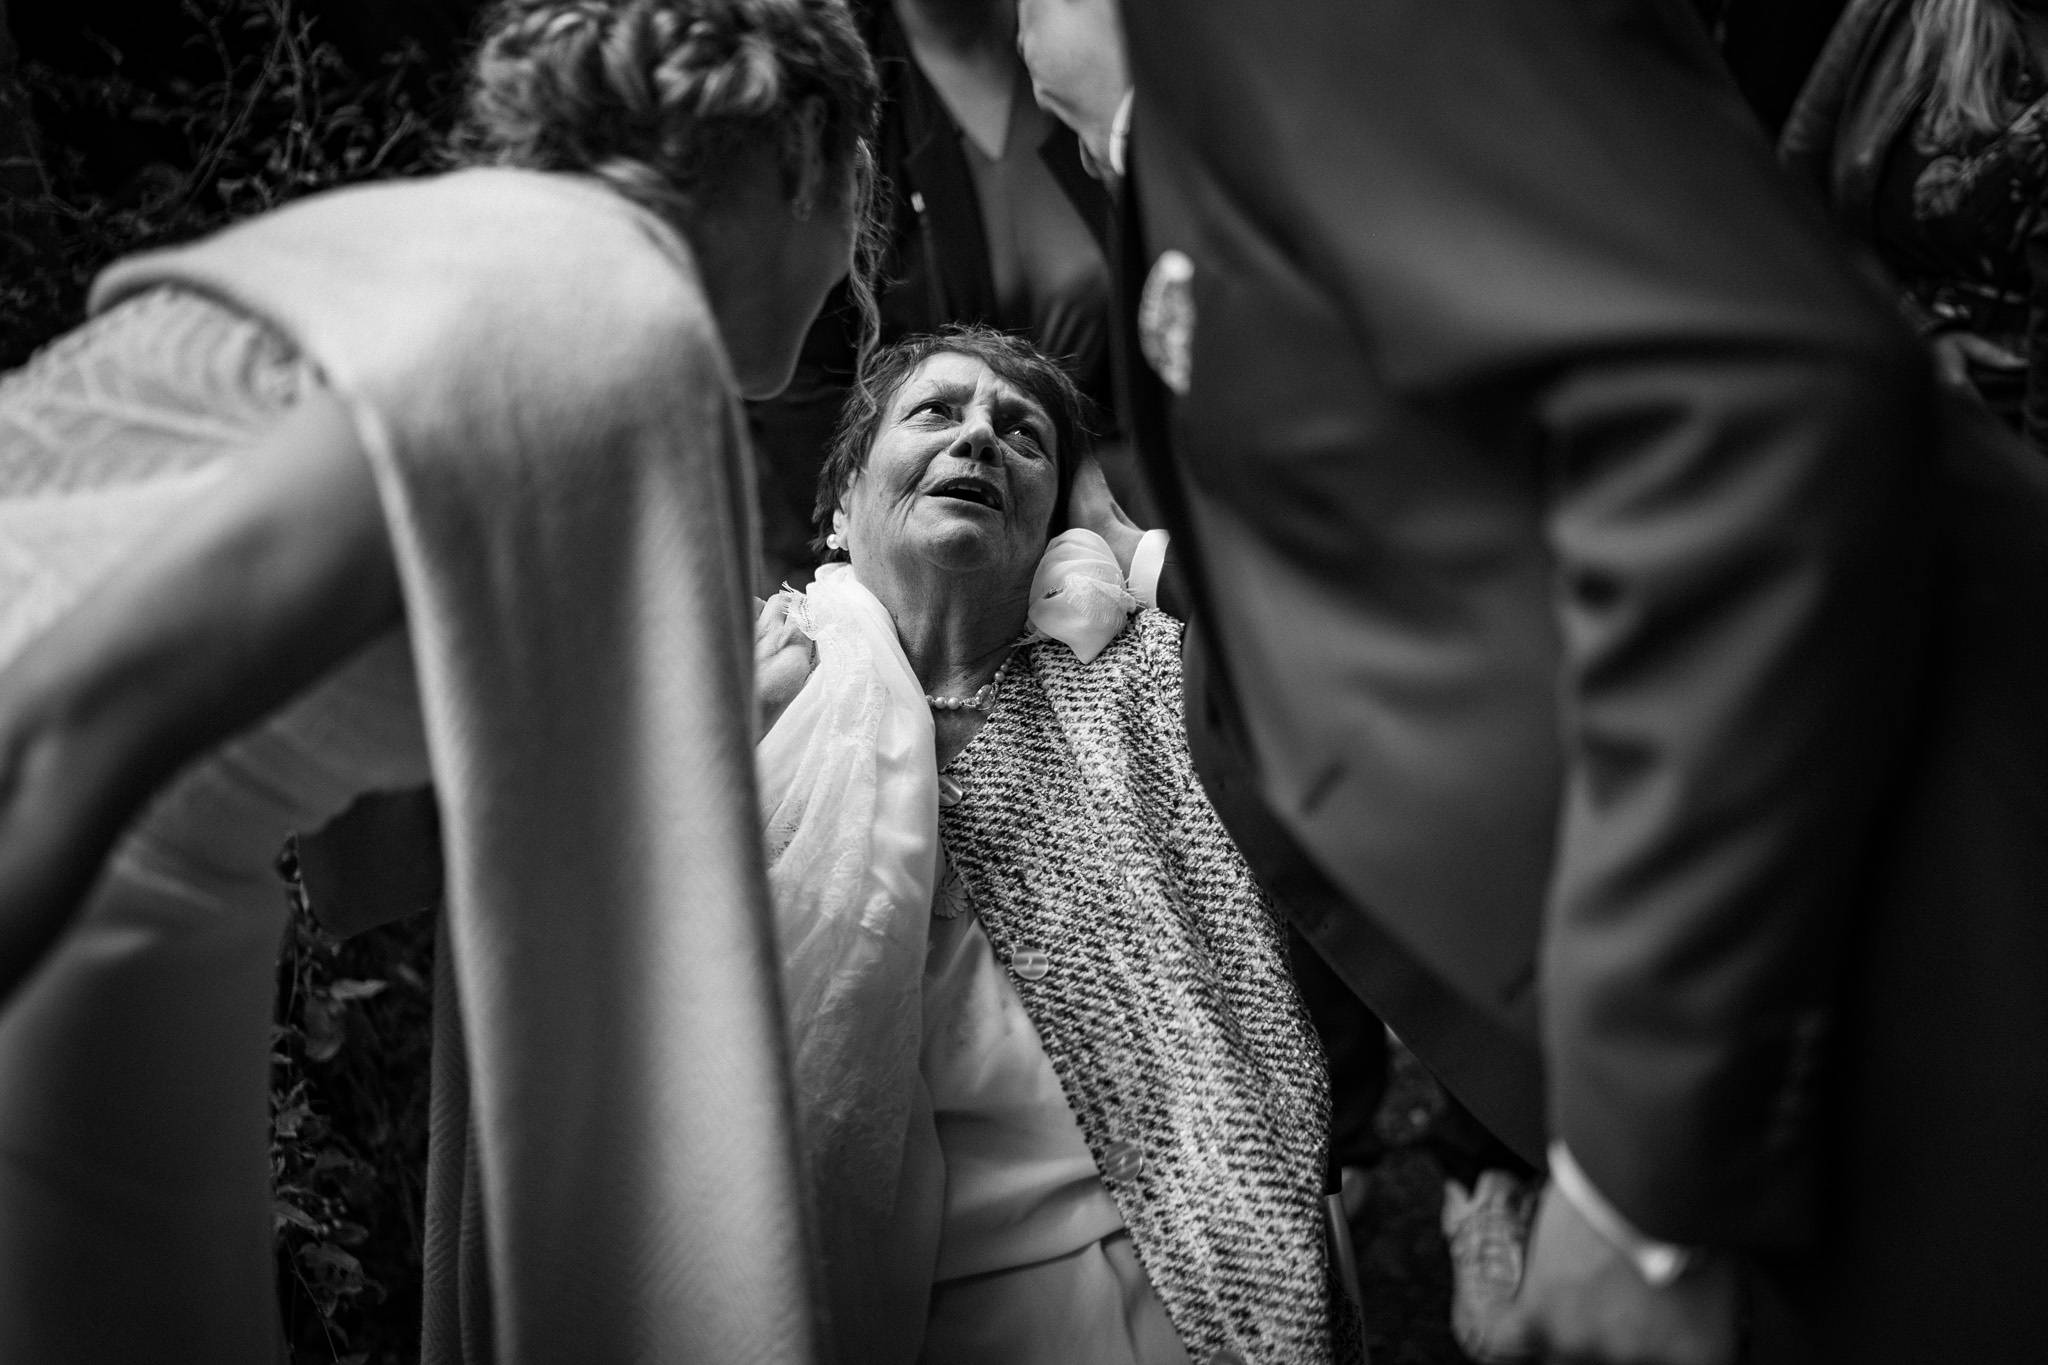 Le reportage photo du mariage et de la cérémonie laïque de Fanny et Thomas à la Chartreuse des Eyres à Podensac. Alexandre Roschewitz photographe.